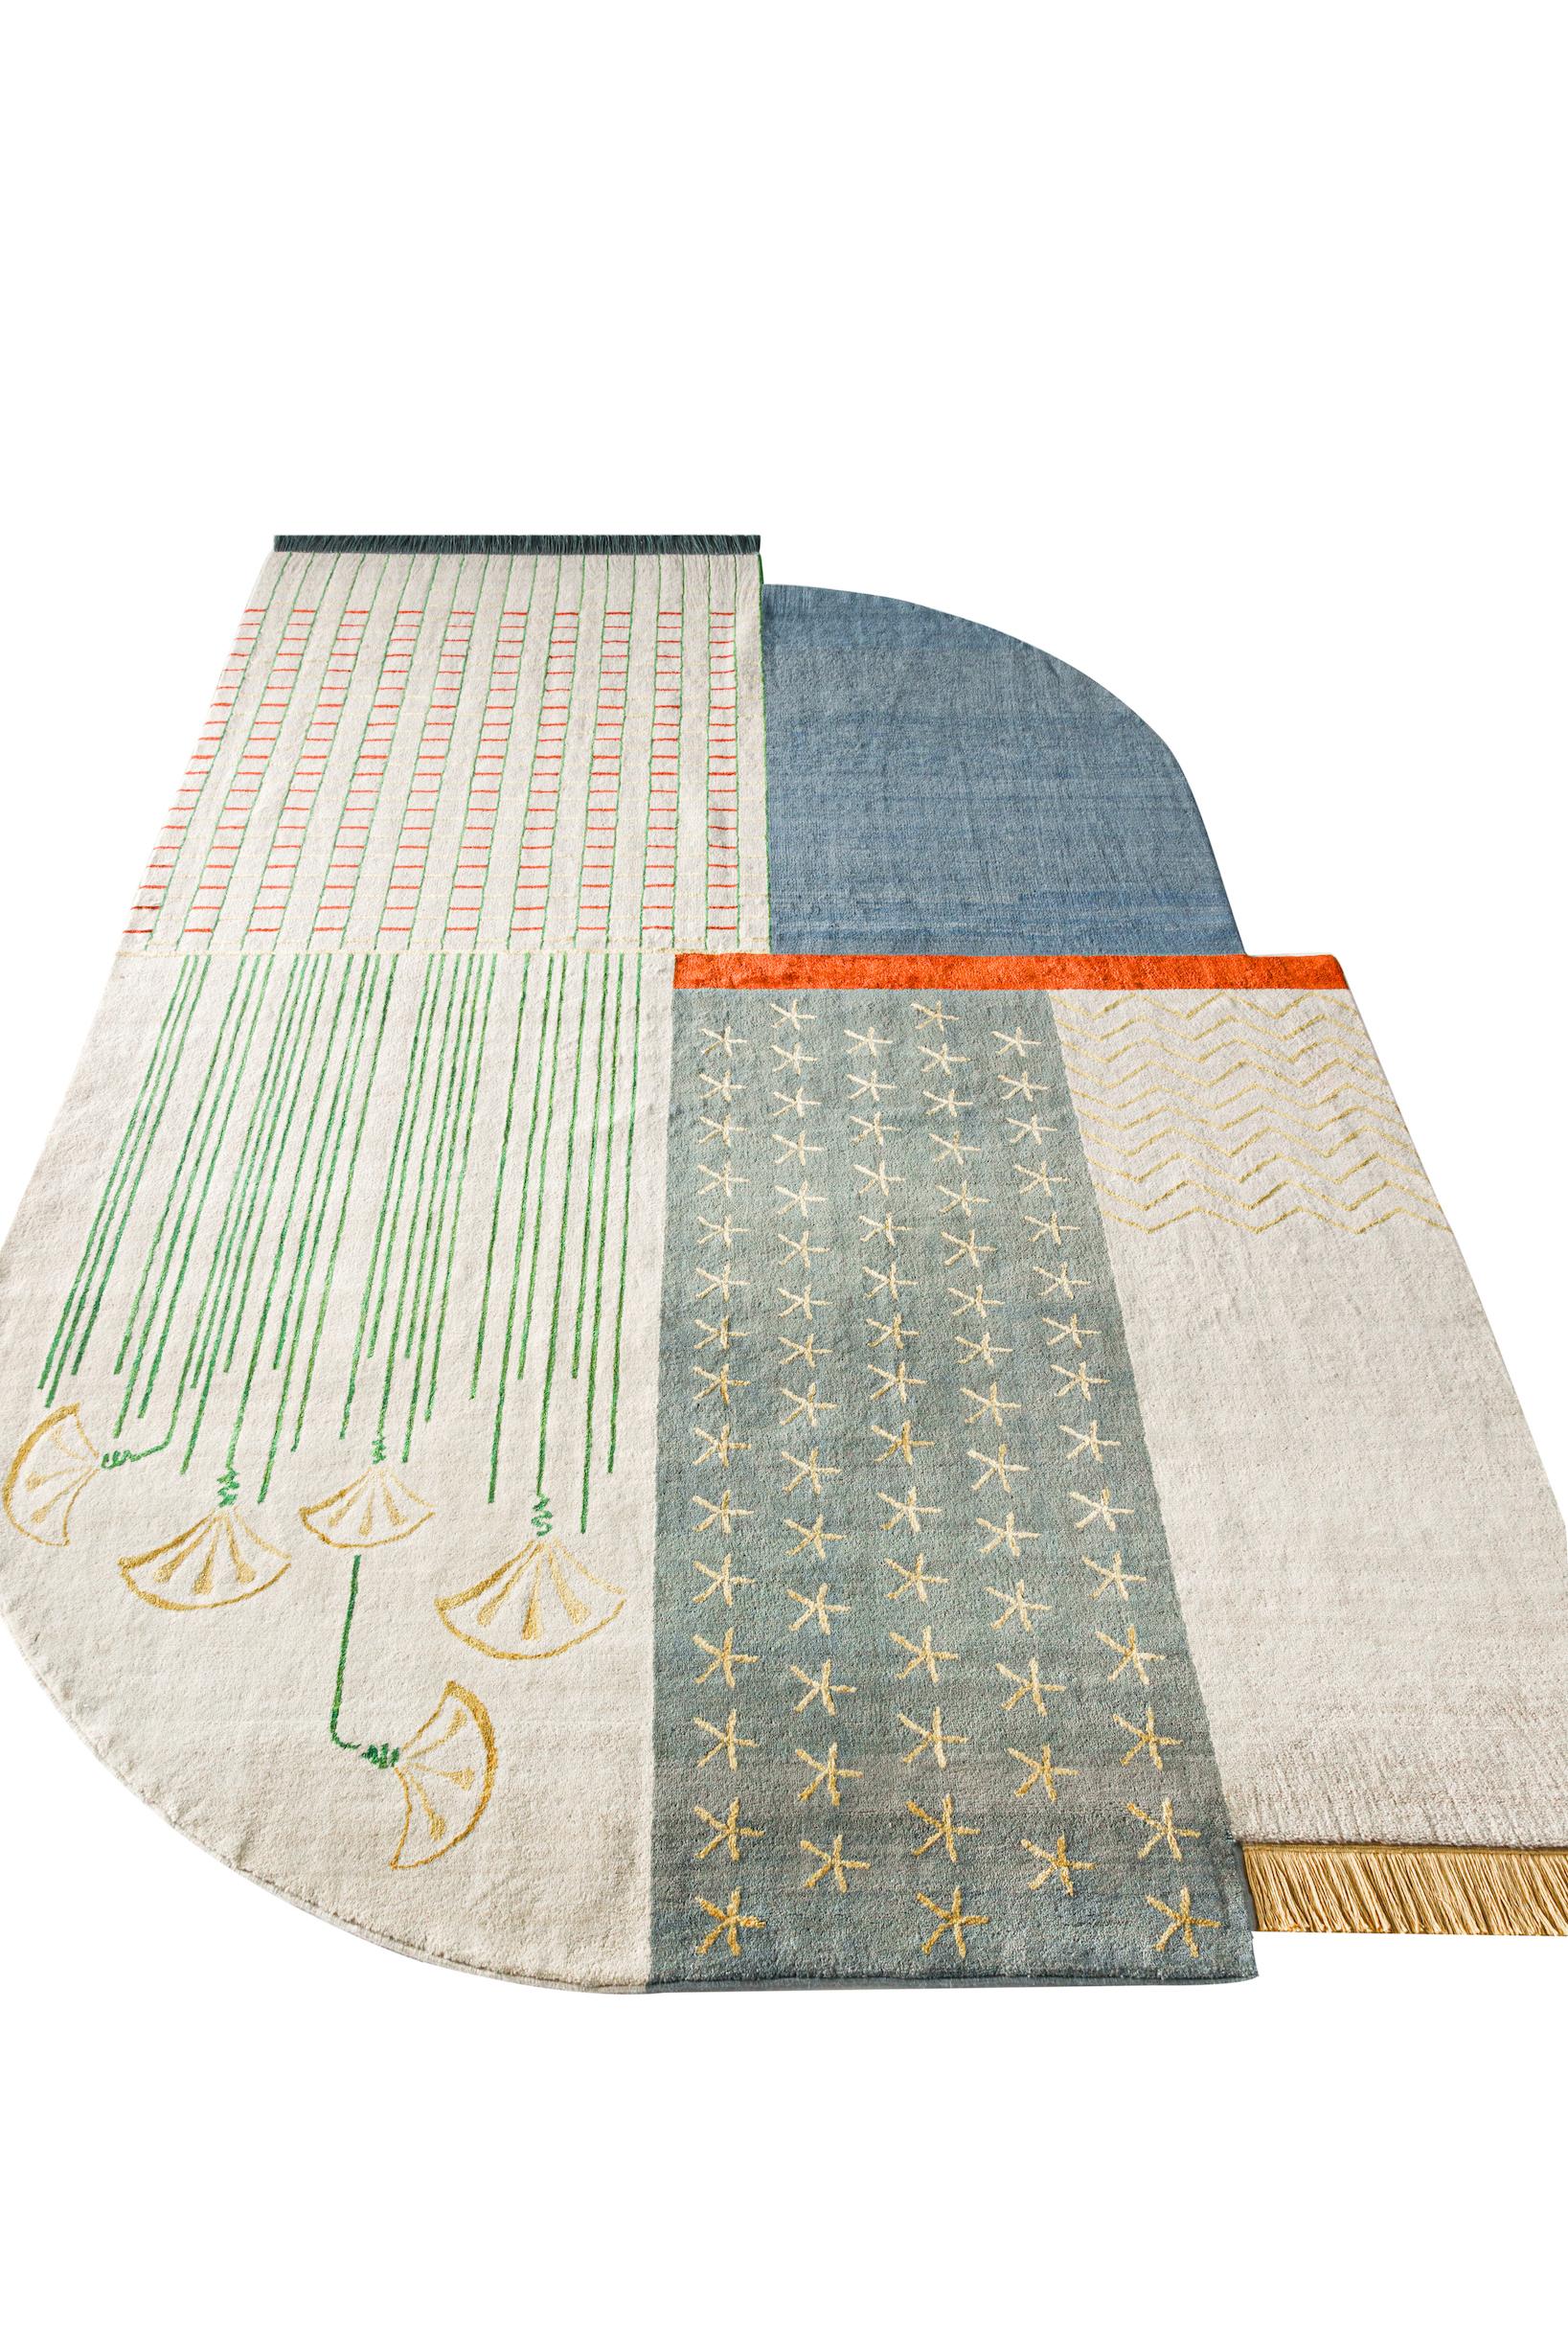 Kahhal Looms Blauer geblümter handgeknüpfter Teppich 300x200cm von Shewekar (Art déco) im Angebot